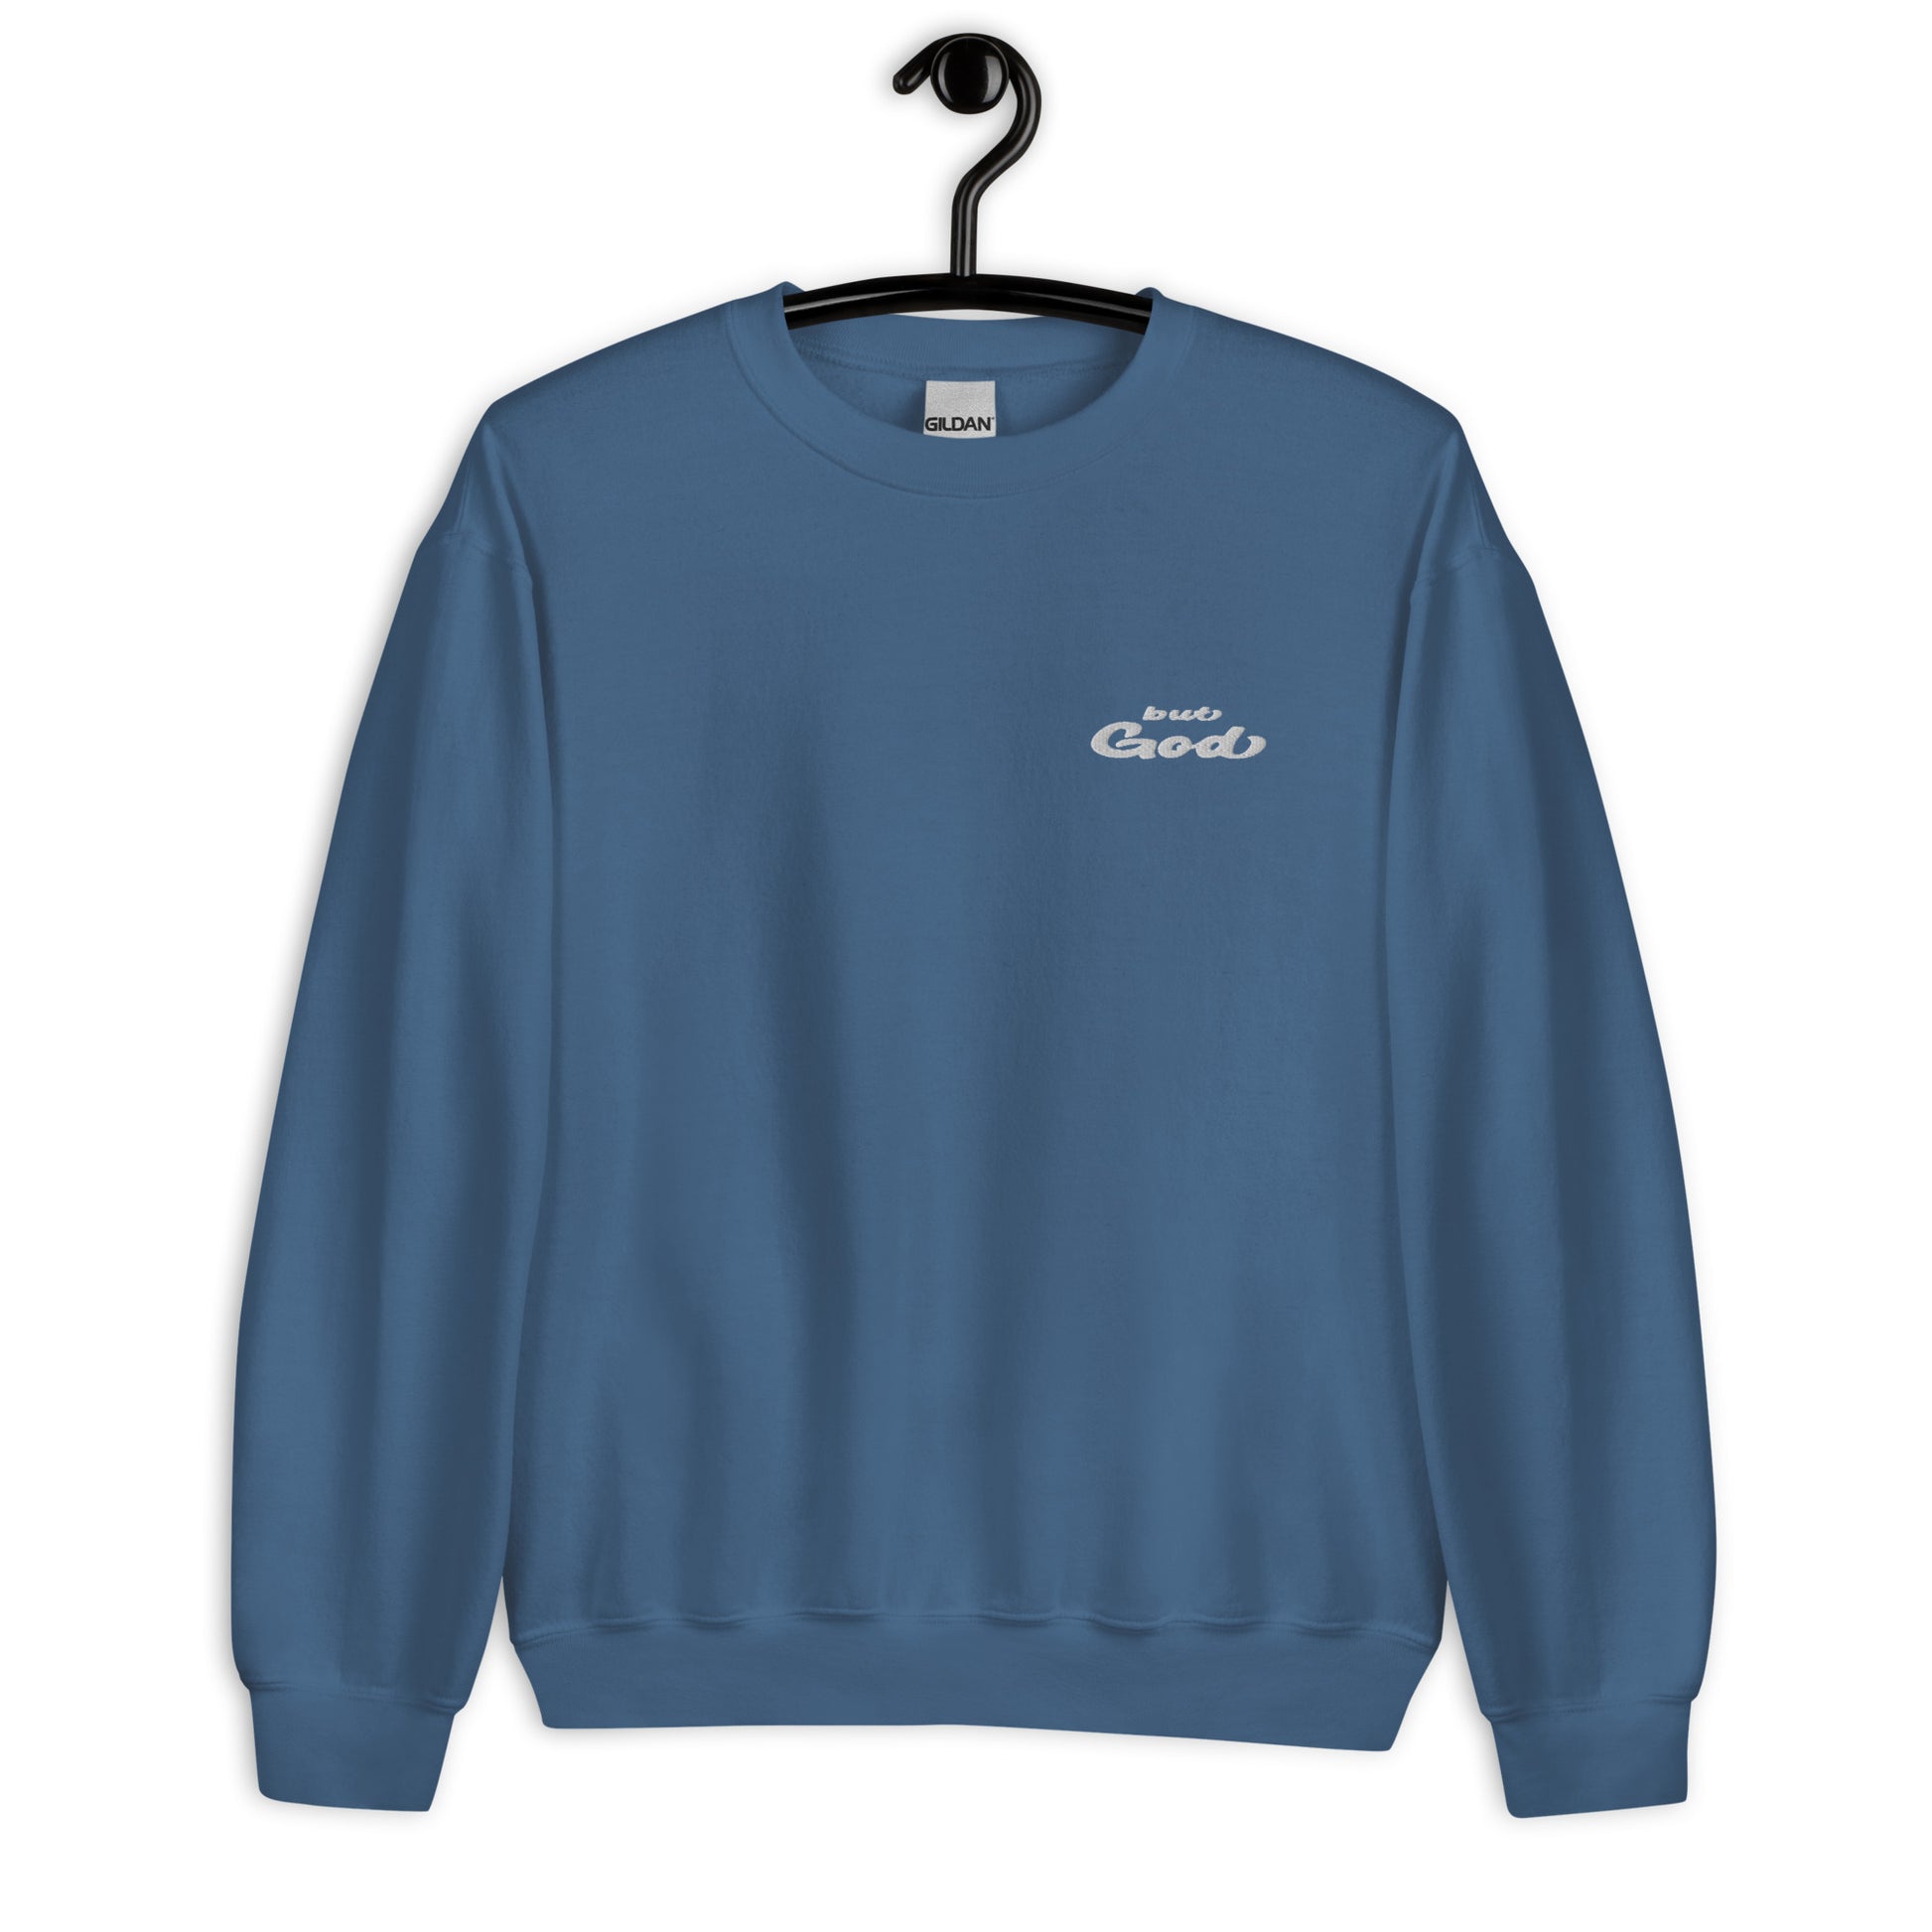 But God Embroidered Unisex Sweatshirt indigo blue